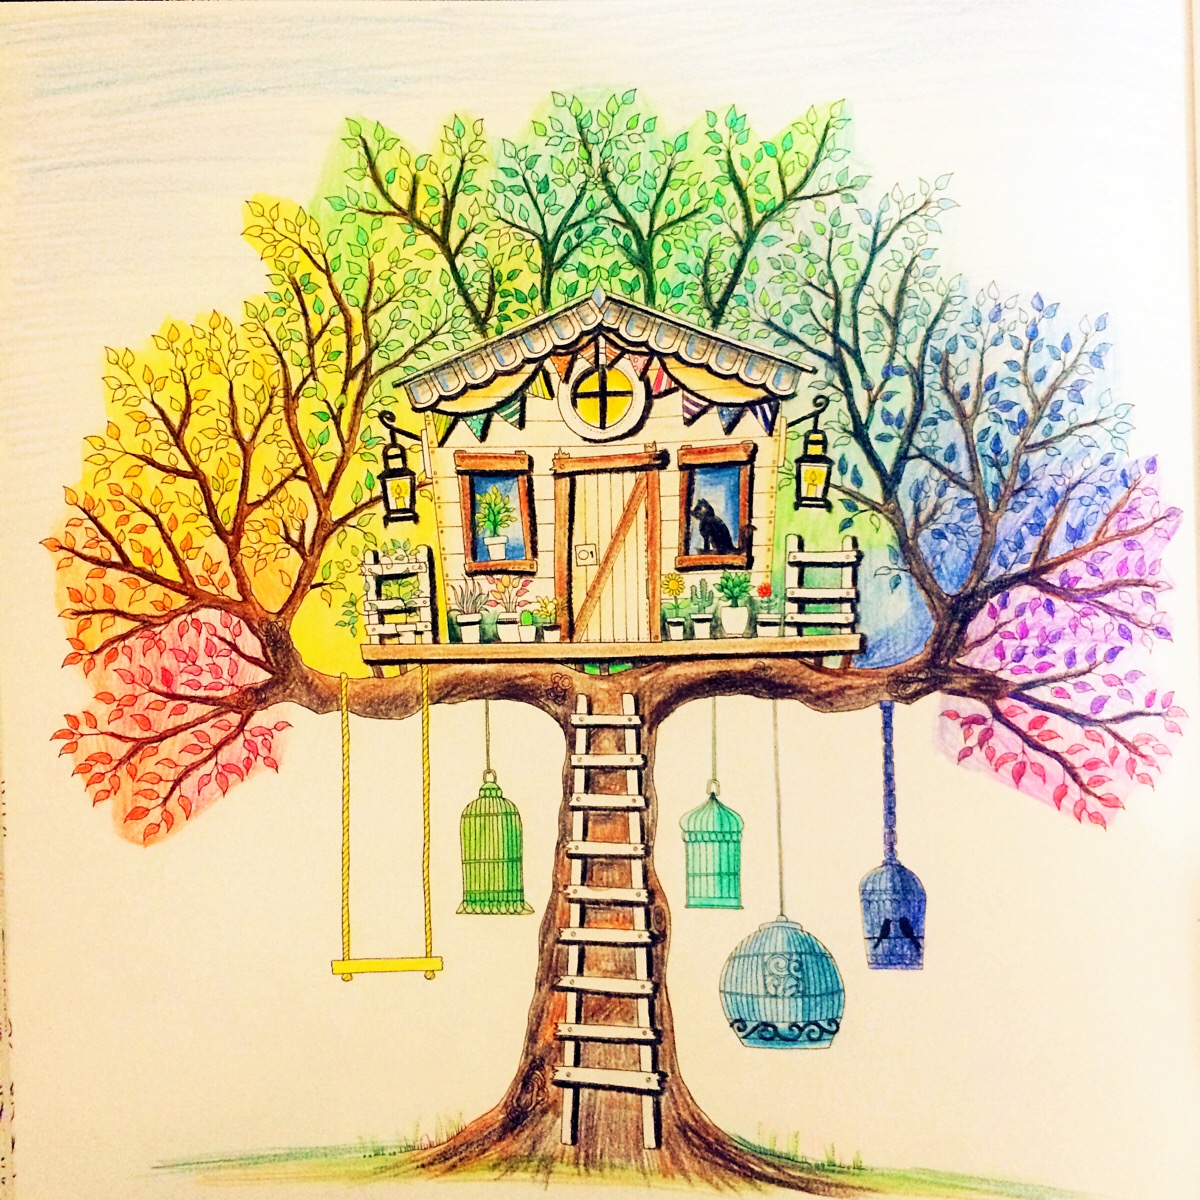 秘密花园第三副作品——彩虹树屋画得很快,效果好好哟!